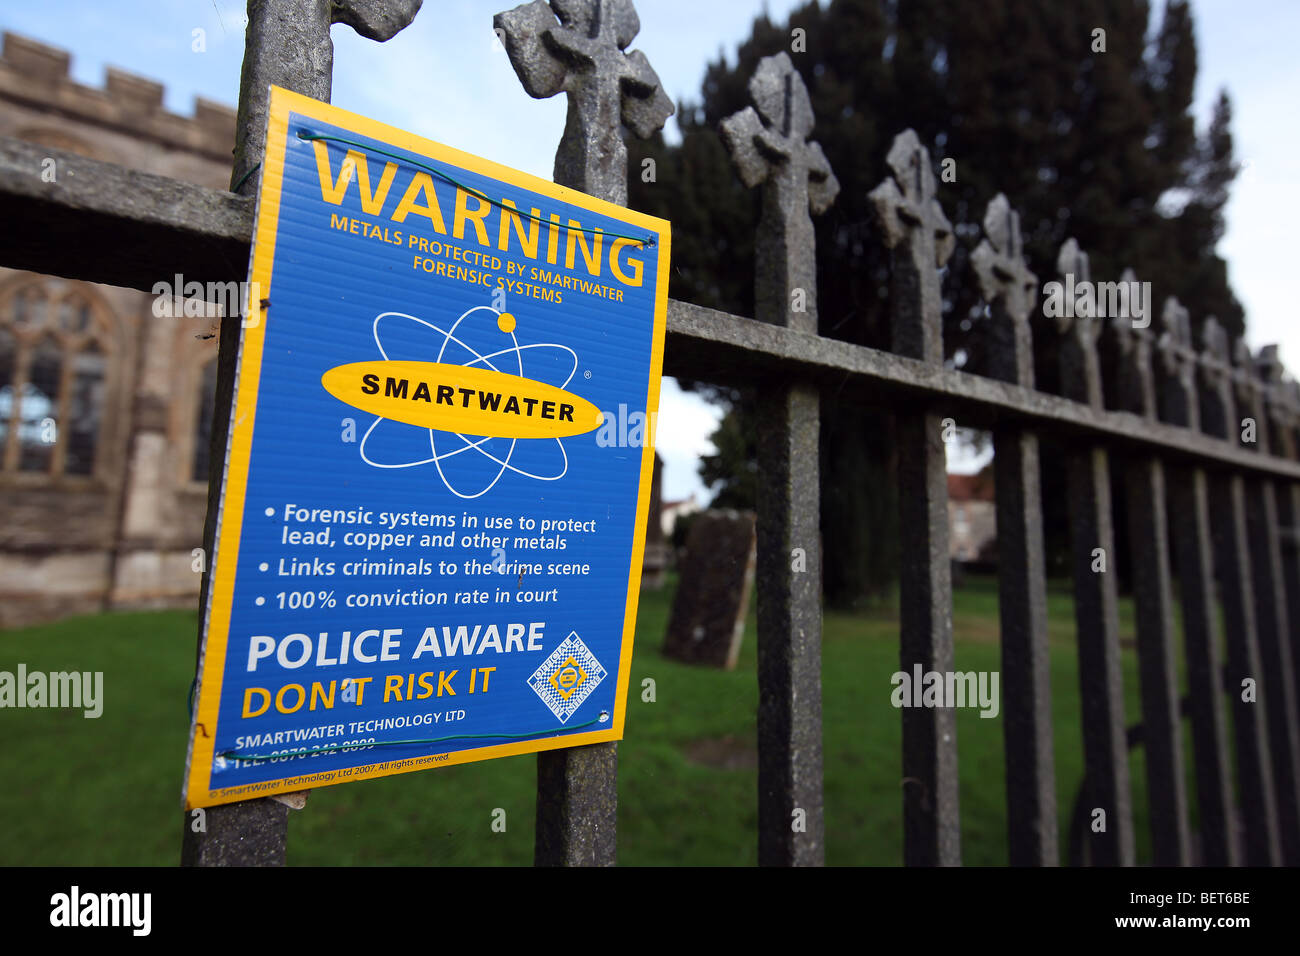 Allgemeines Bild von einem Gusseisen Zaun außerhalb einer Kirche mit einem Smartwater Schild Warnung vor potentiellen Verbrecher. Stockfoto